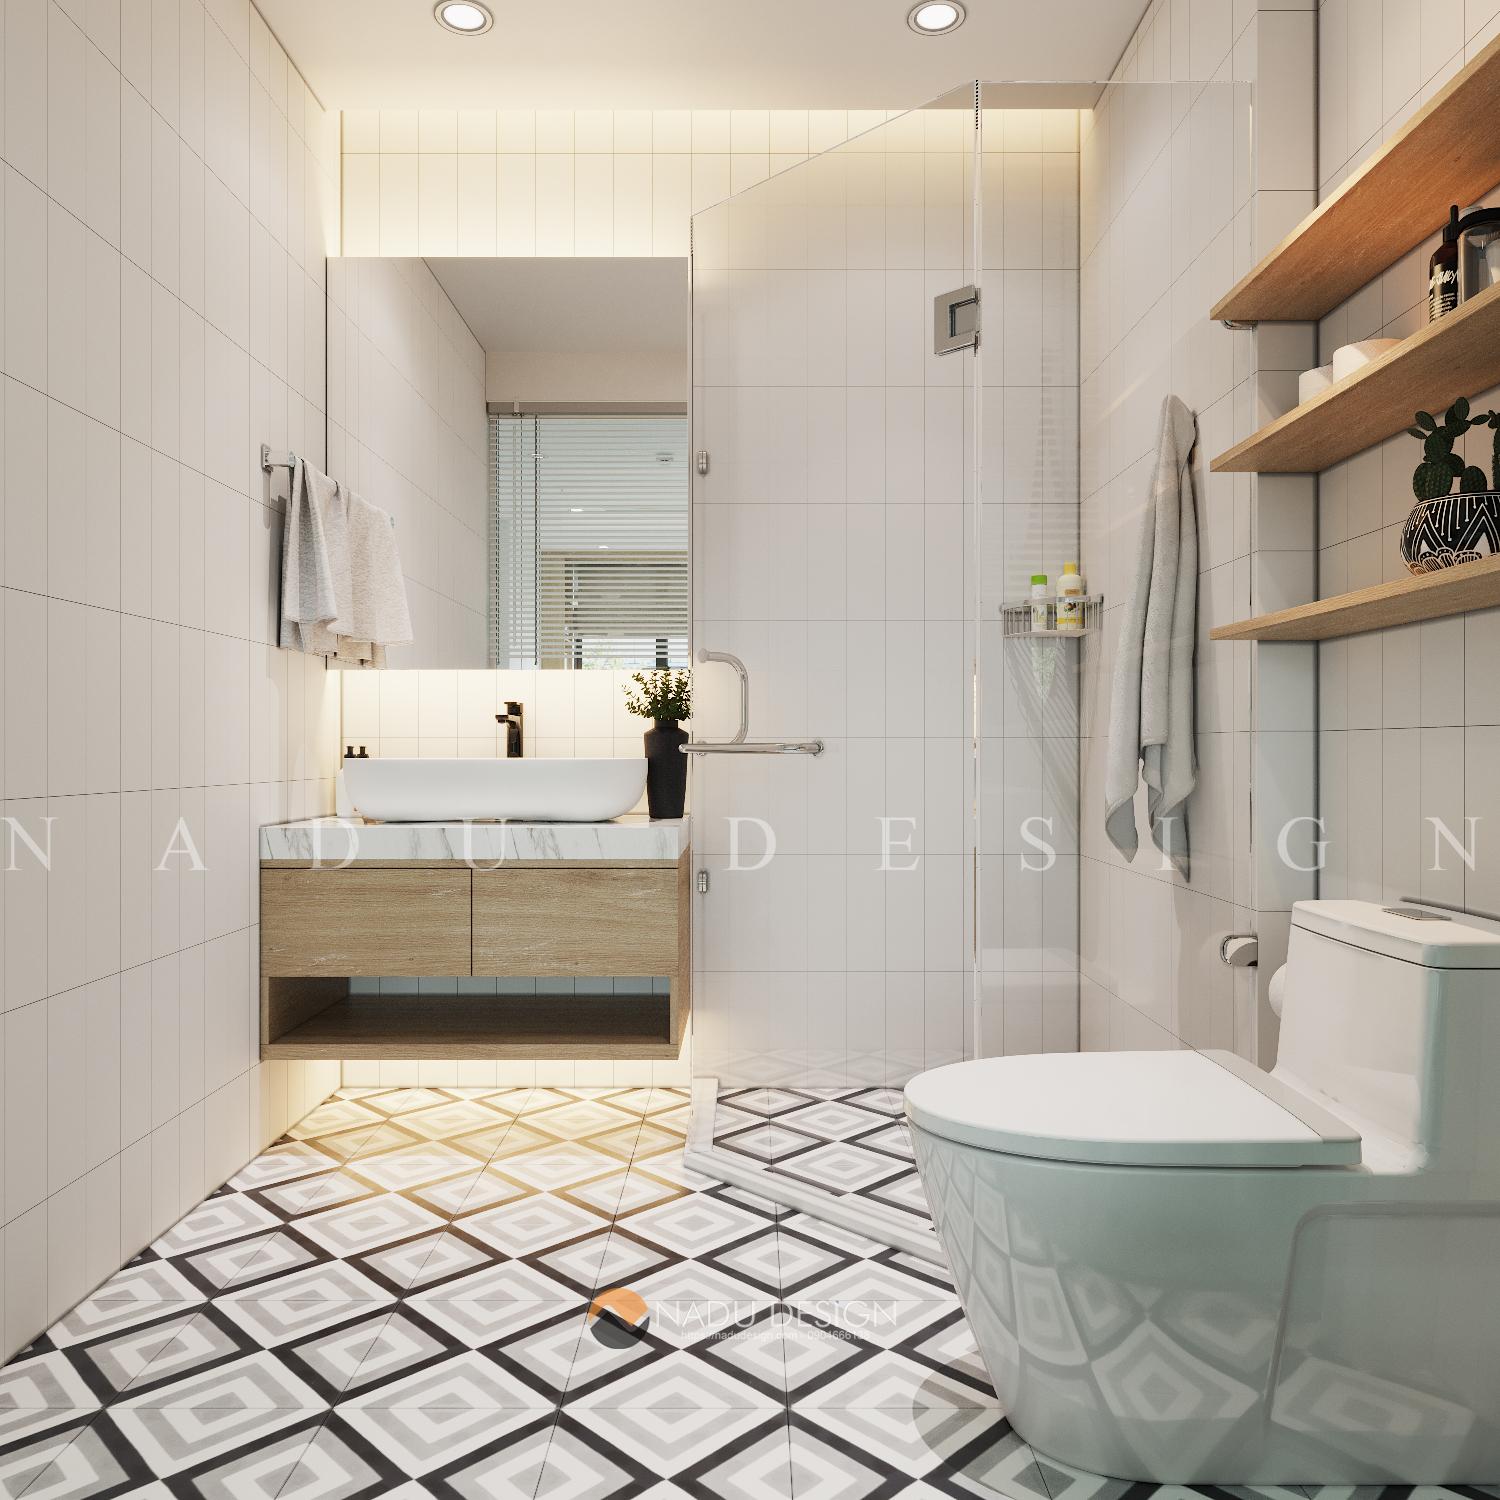 Thiết kế phòng tắm 4m2 sang trọng mang đến cho bạn sự hiện đại và đẳng cấp. Với các mẫu thiết kế đầy tính thẩm mỹ, không gian nhỏ hẹp sẽ được tối đa hóa về mặt tiện dụng và đảm bảo sự thoải mái. Hãy xem hình ảnh để tìm kiếm ý tưởng và lấy niềm đam mê trong cuộc sống.